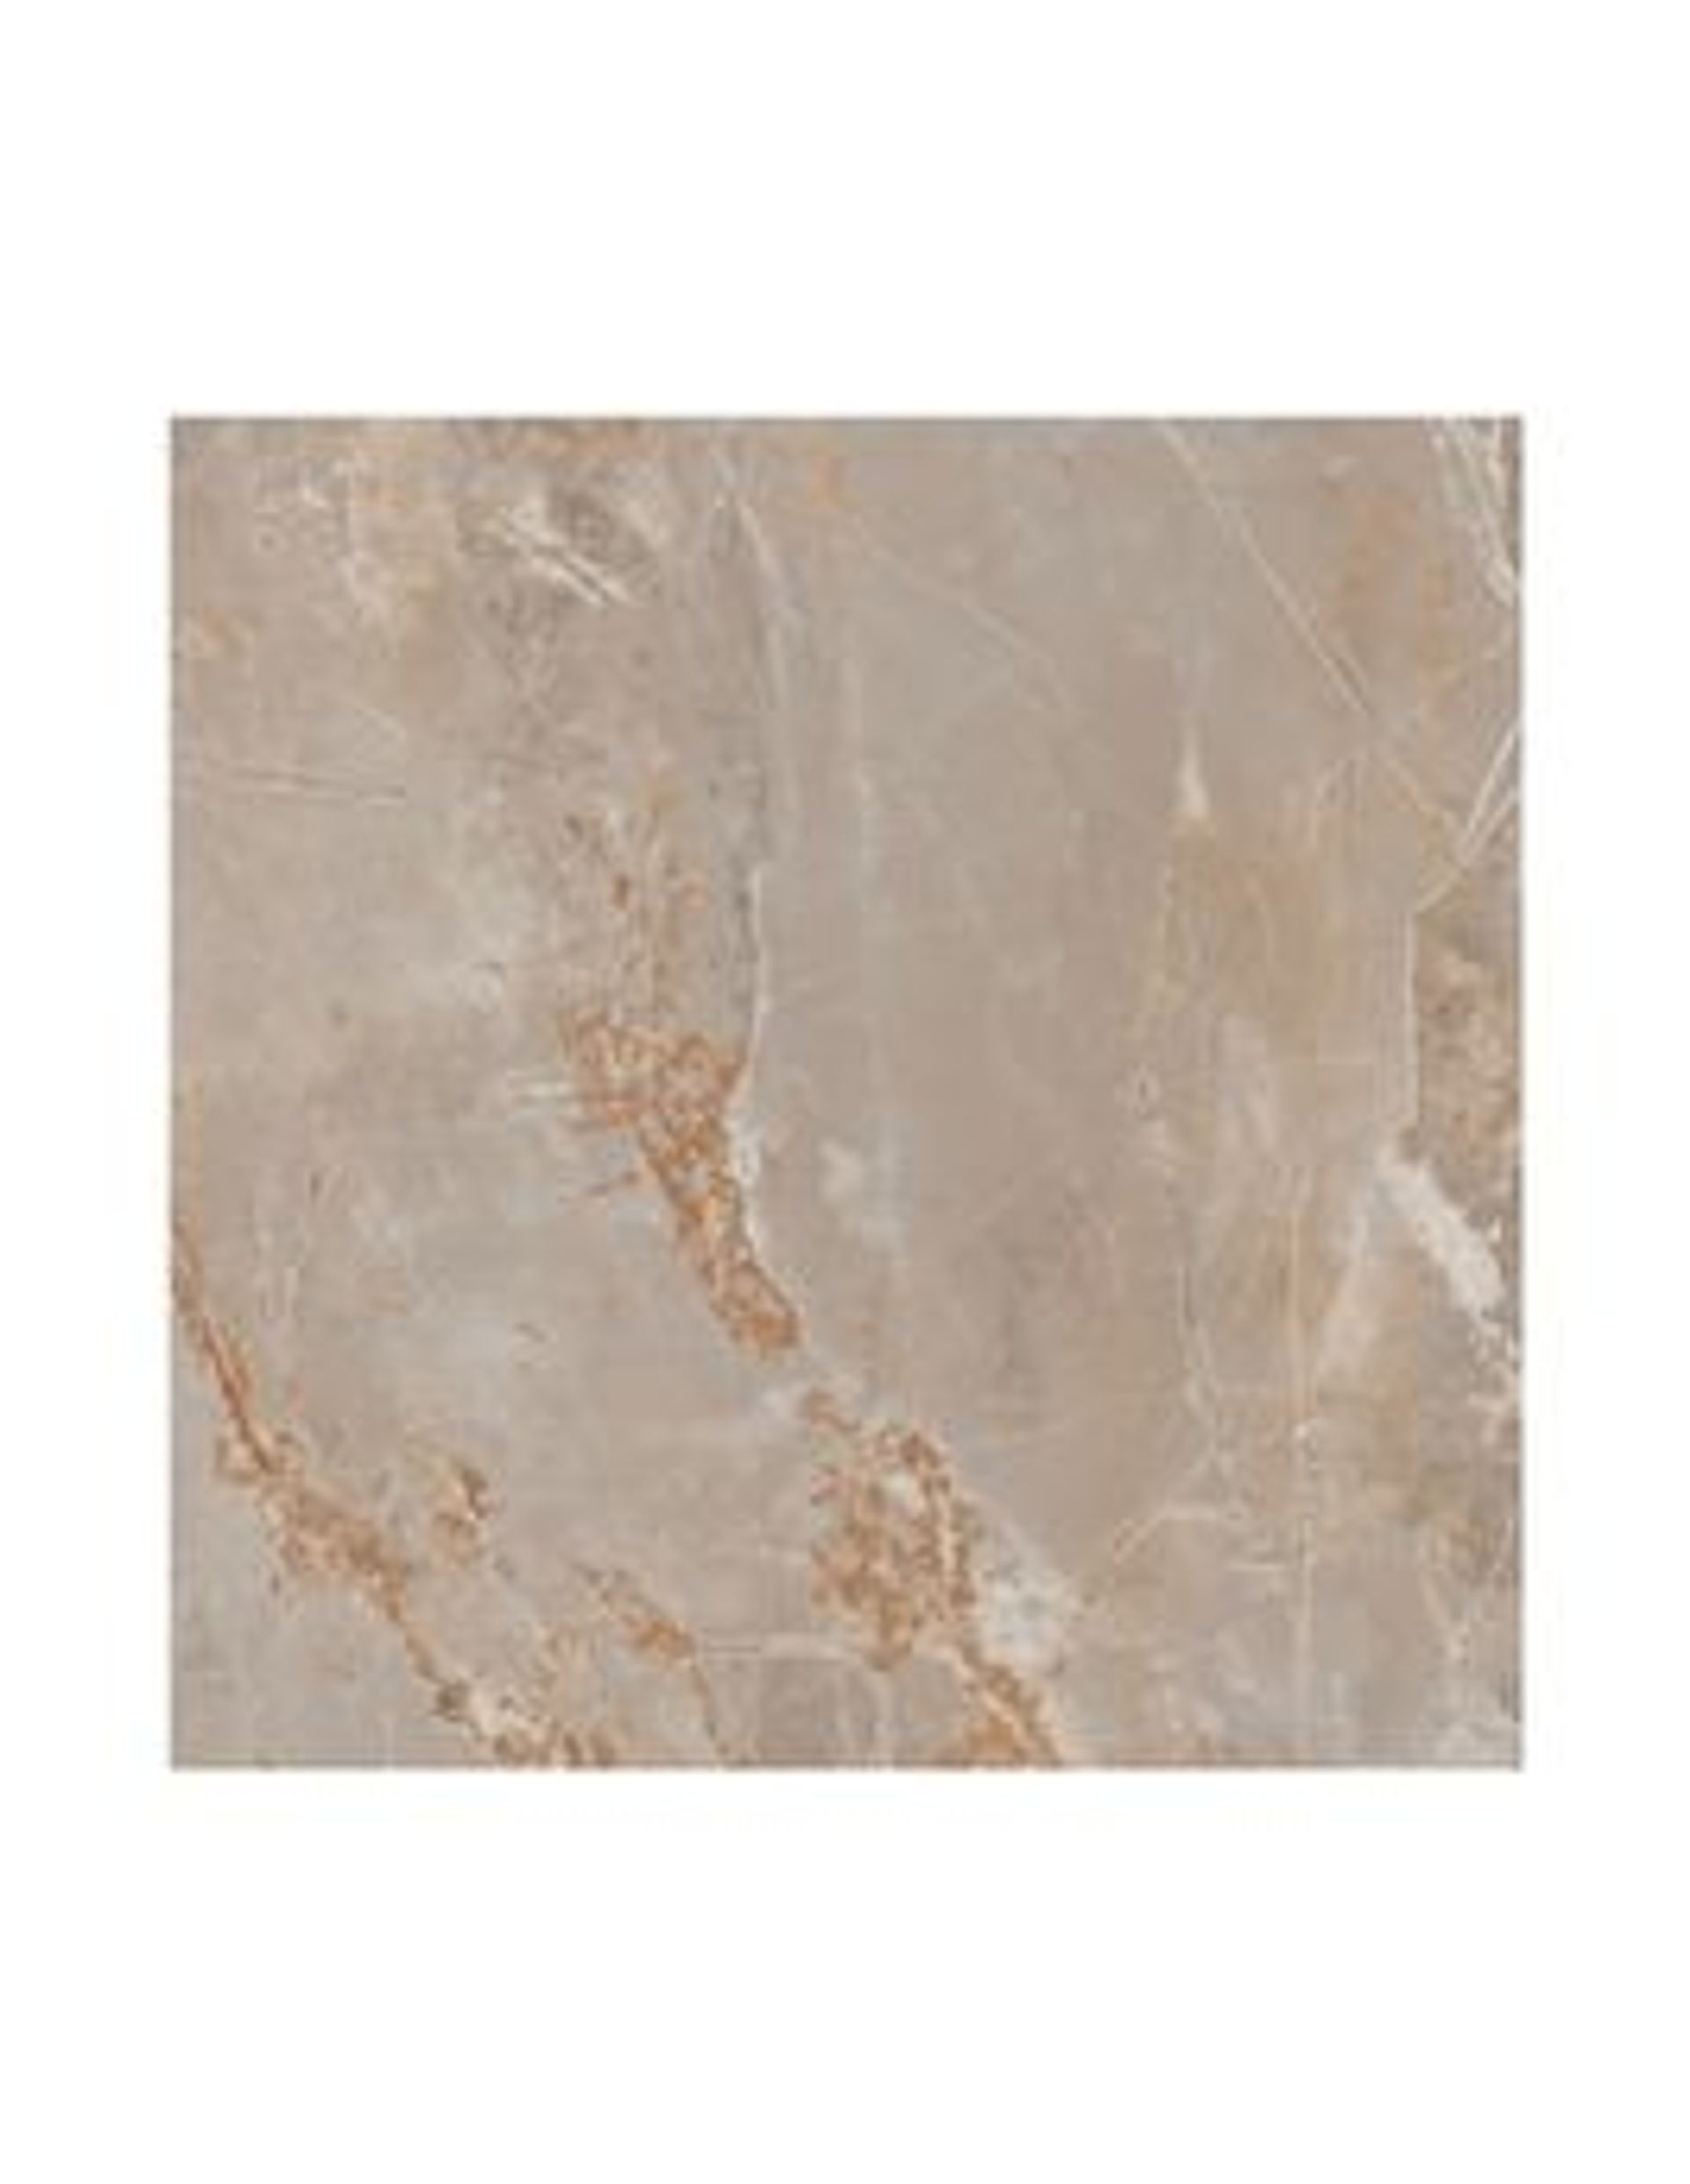 Carrelage RENAISSANCE, aspect marbre beige, dim 60.00 x 120.00 cm